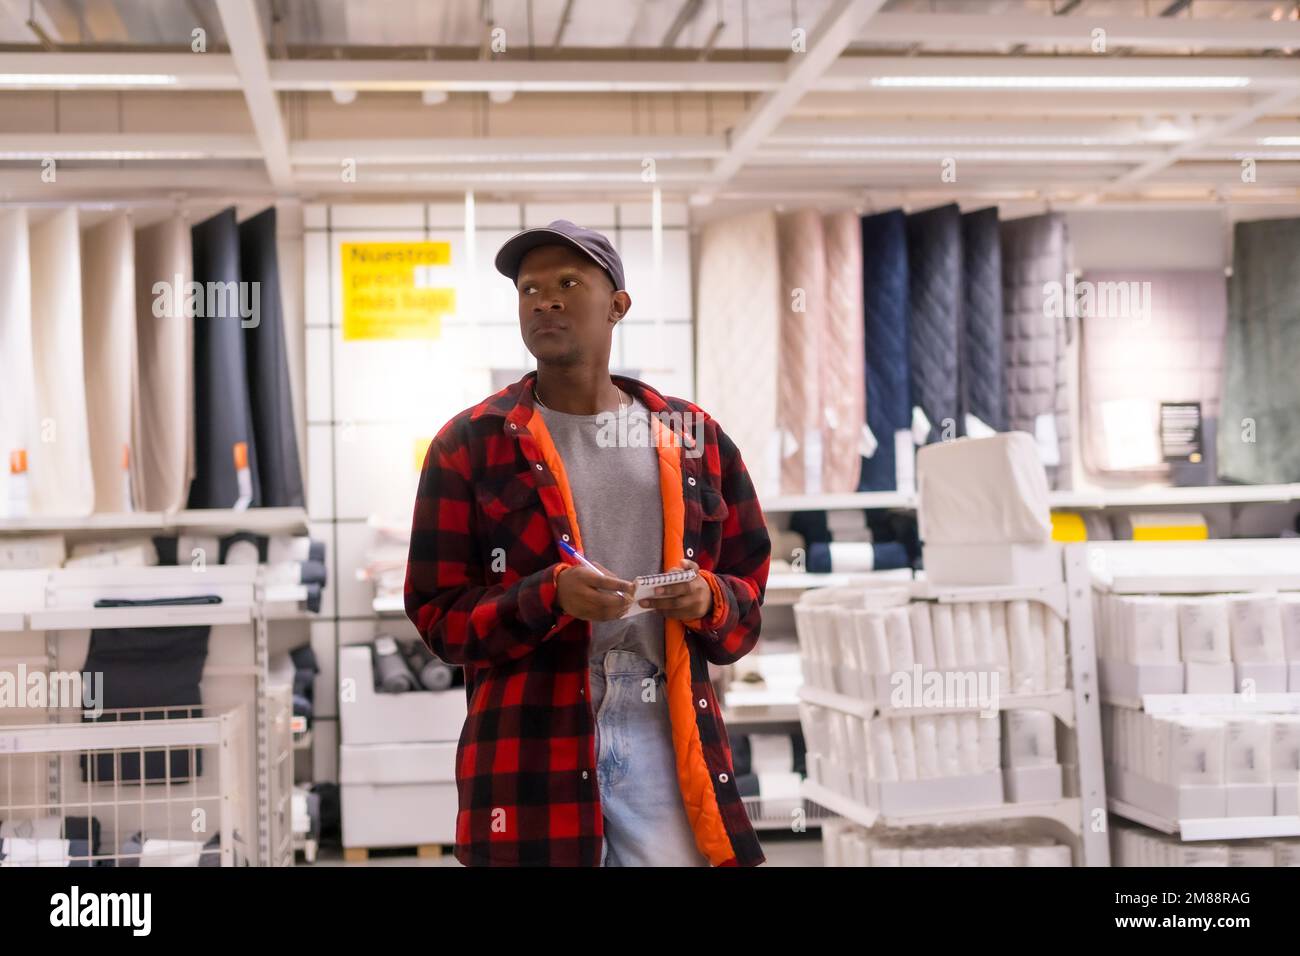 Schwarzer ethnischer Mann, der in einem Supermarkt Teppiche und Handtücher einkauft Stockfoto